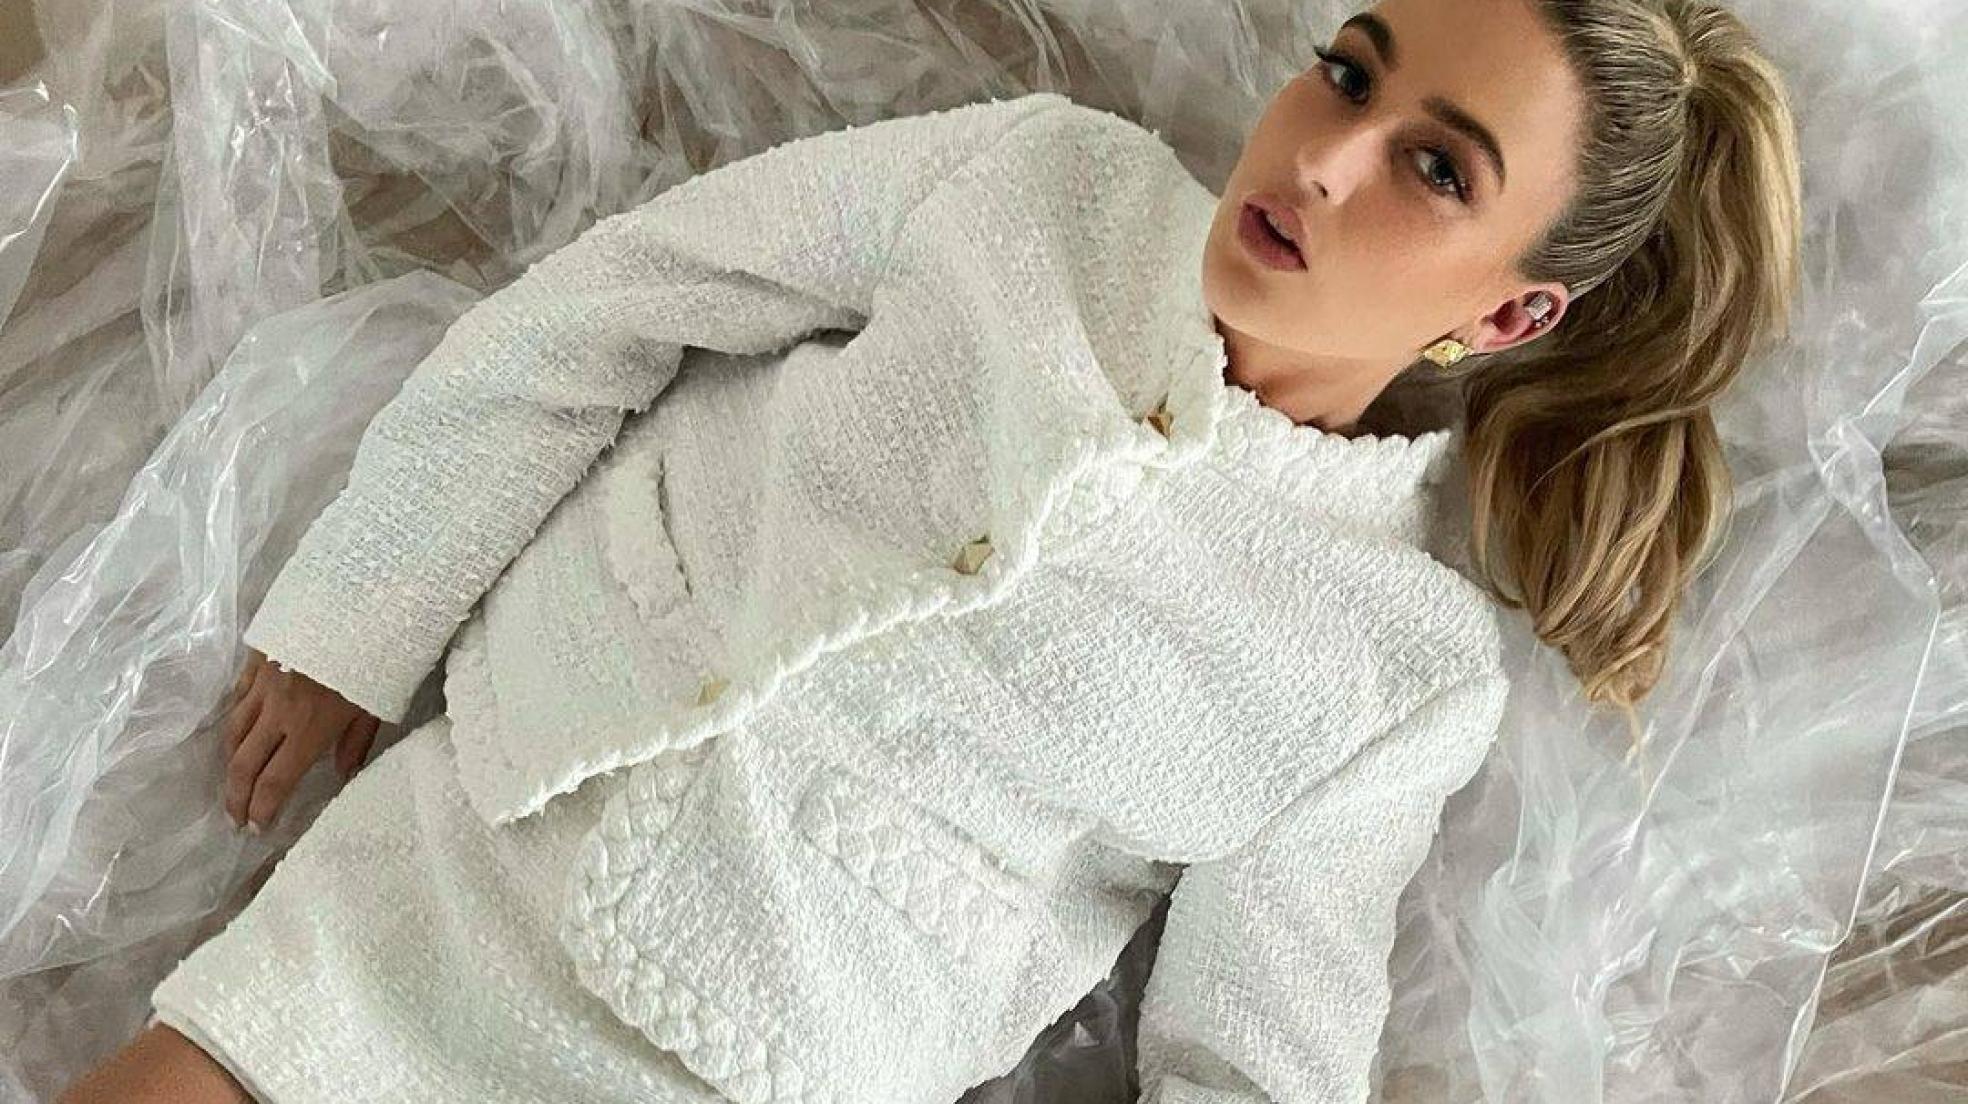 Vestidos y pichis de tweed: cómo combinar la tendencia que ha unido a Chanel  y Zara - Foto 1